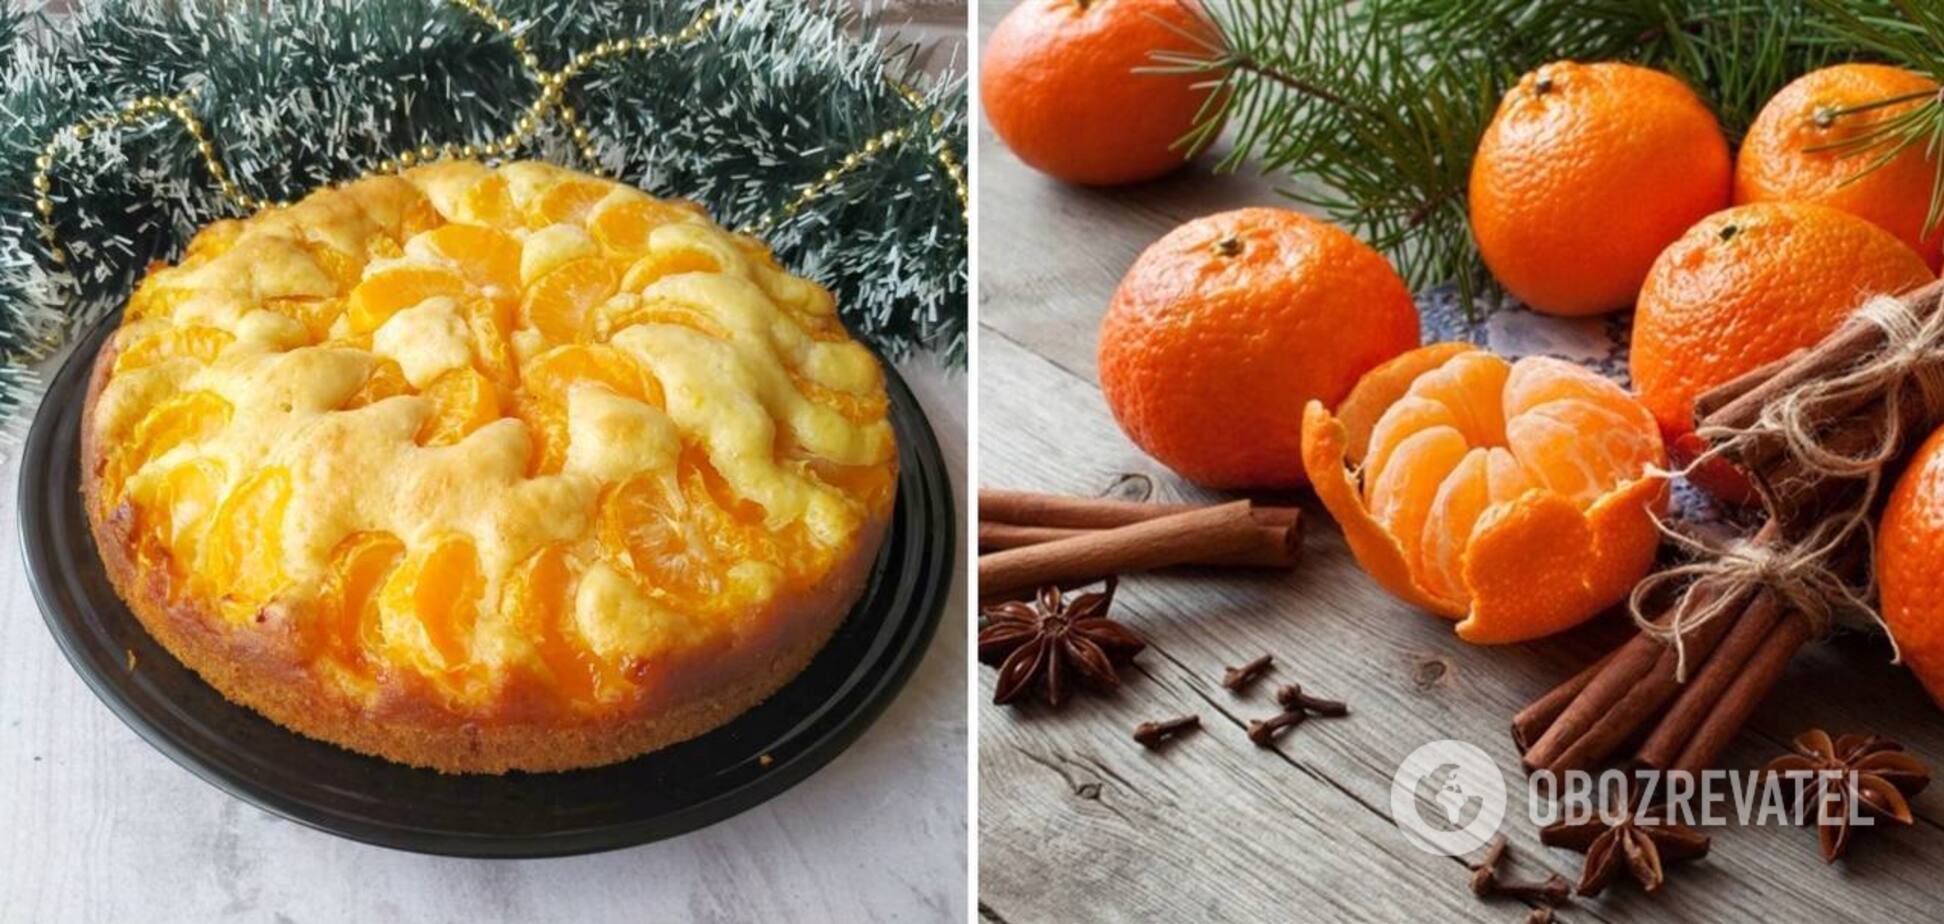 Пирог с жаренными мандаринами без выпечки: рецепт стал вирусным в TikTok